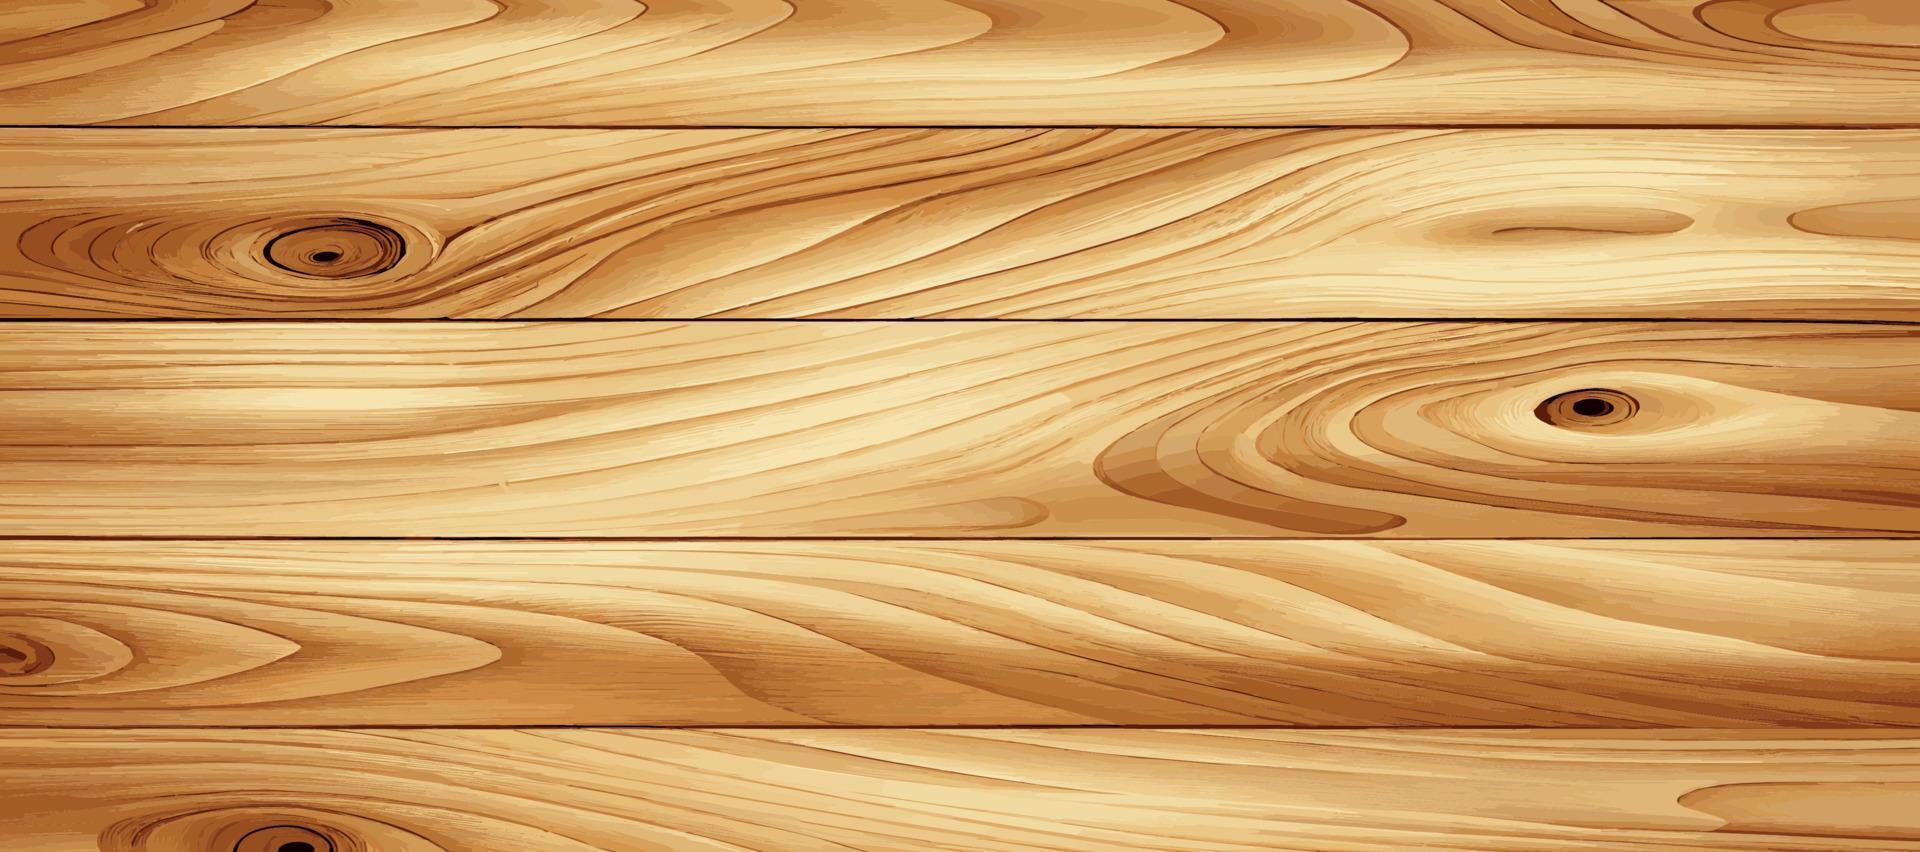 trama panoramica di legno chiaro con nodi - vettore